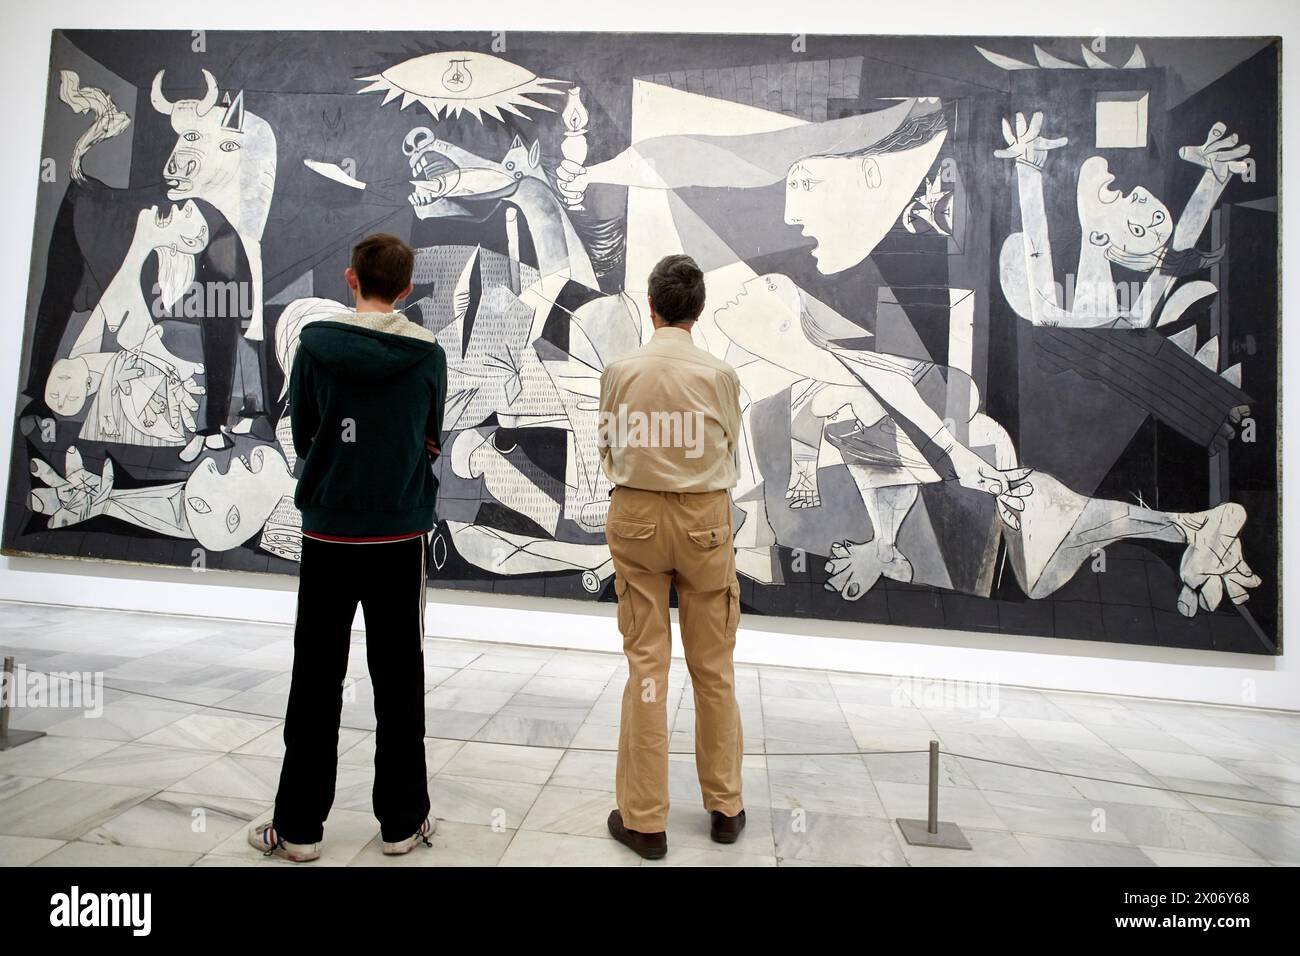 Guernica, 1937, Pablo Picasso, Museo Nacional Centro de Arte Reina Sofia, Madrid, Spain, Europe Stock Photo